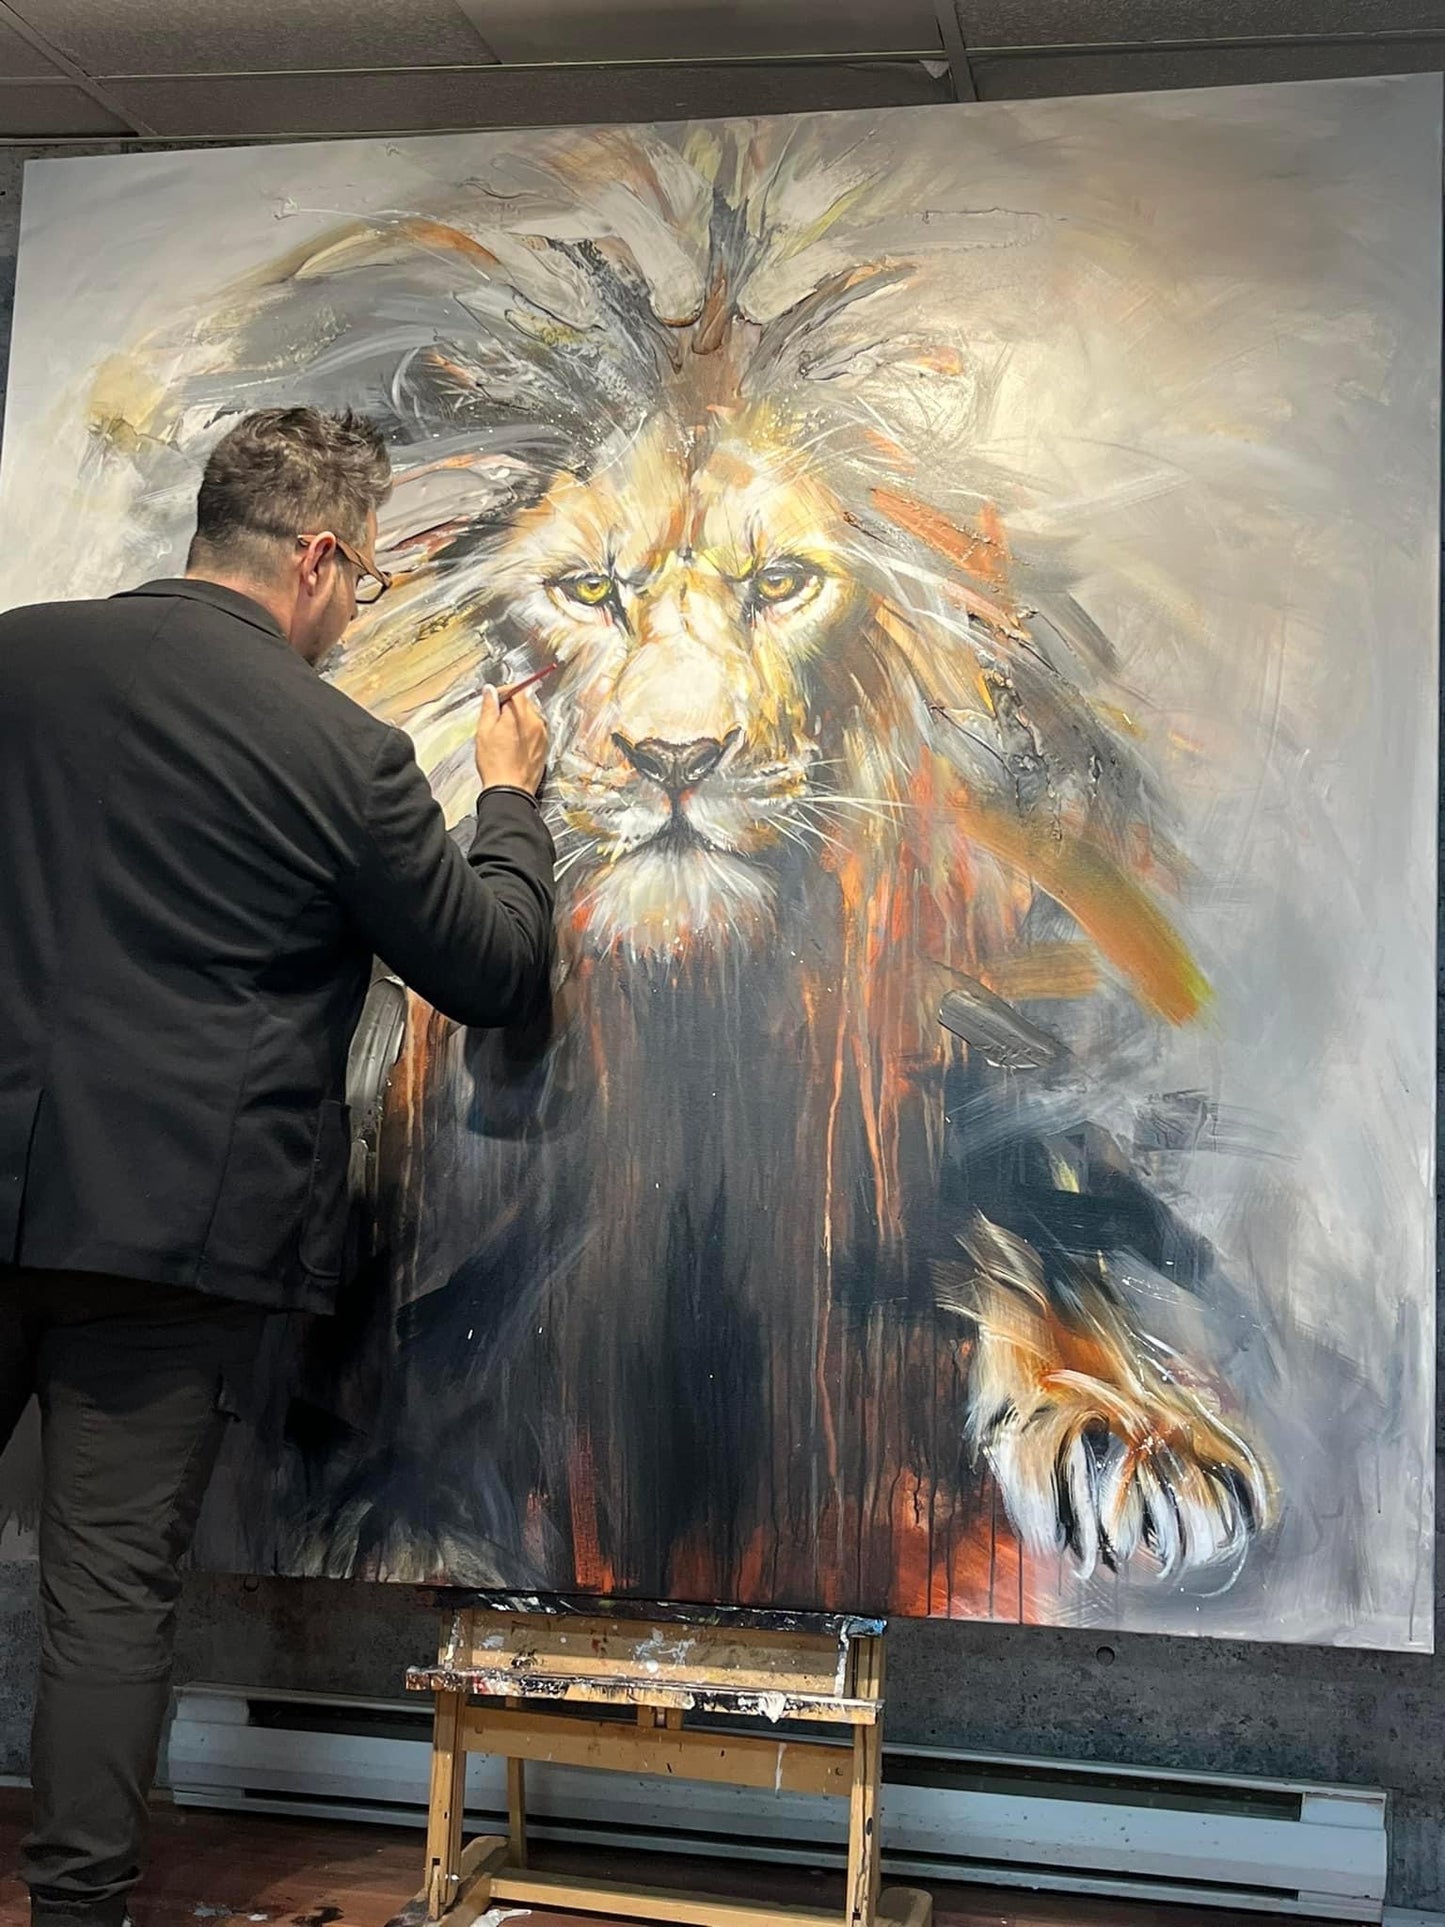 Monarque, le lion/peinture de lion moderne avec passion par l'artiste confetti